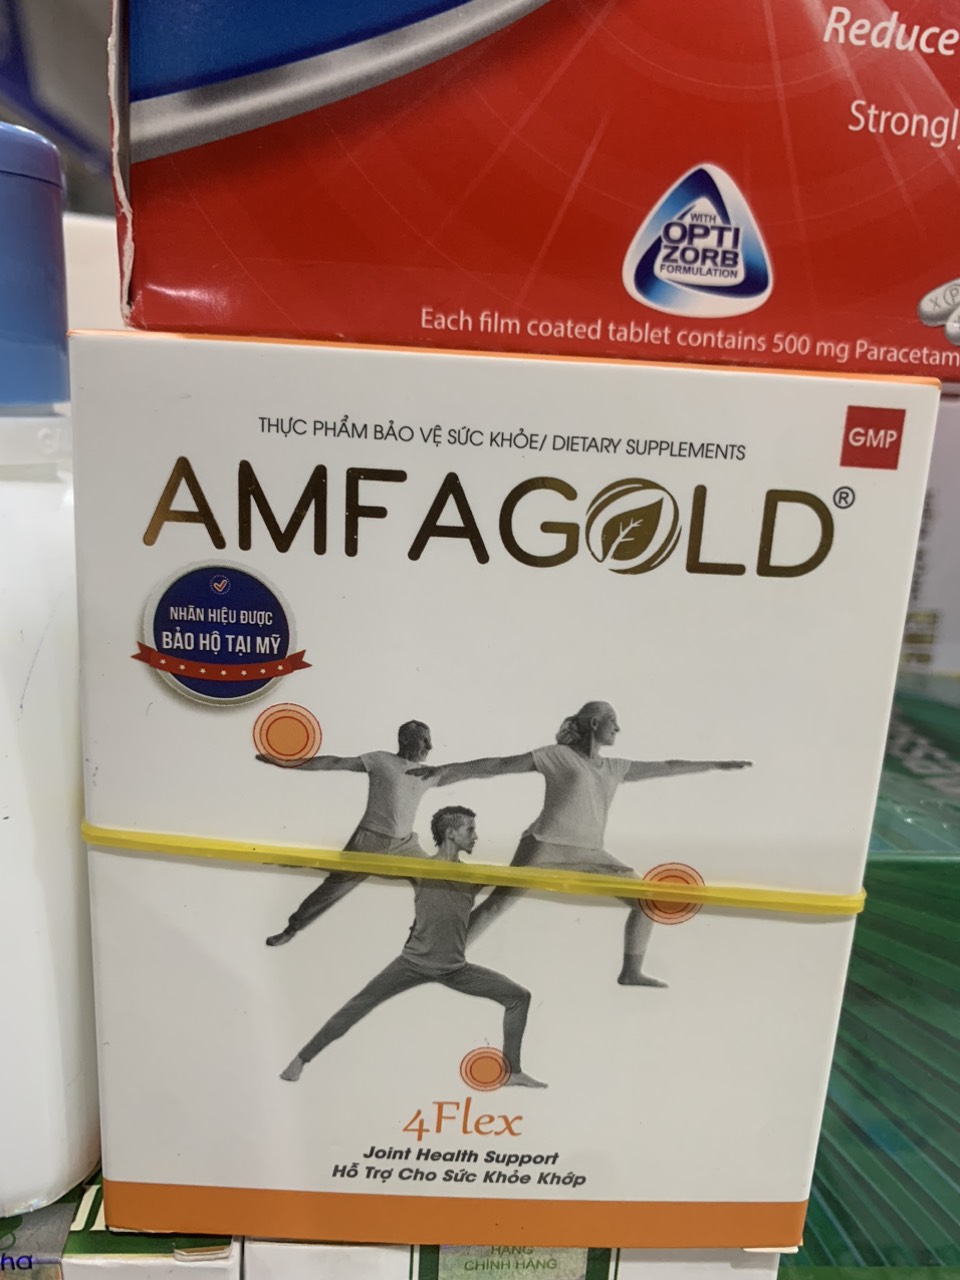 Amfagold 4Flex